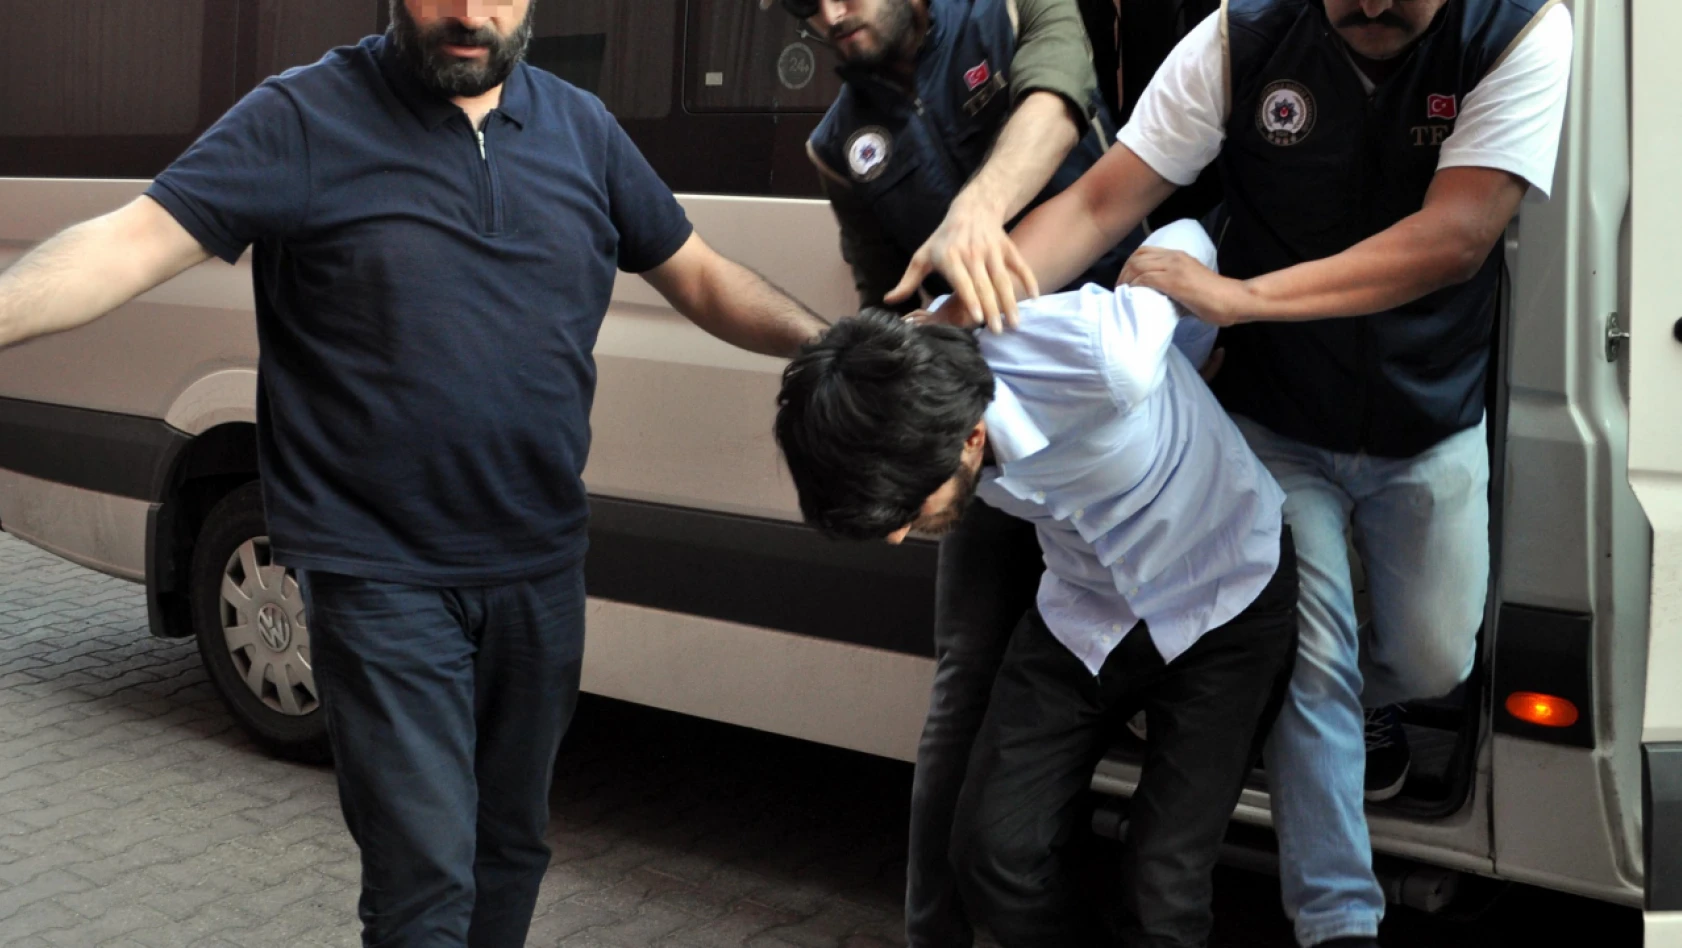 Kayseri'de görülen Adalet Yürüyüşü davasında yeni gelişme!